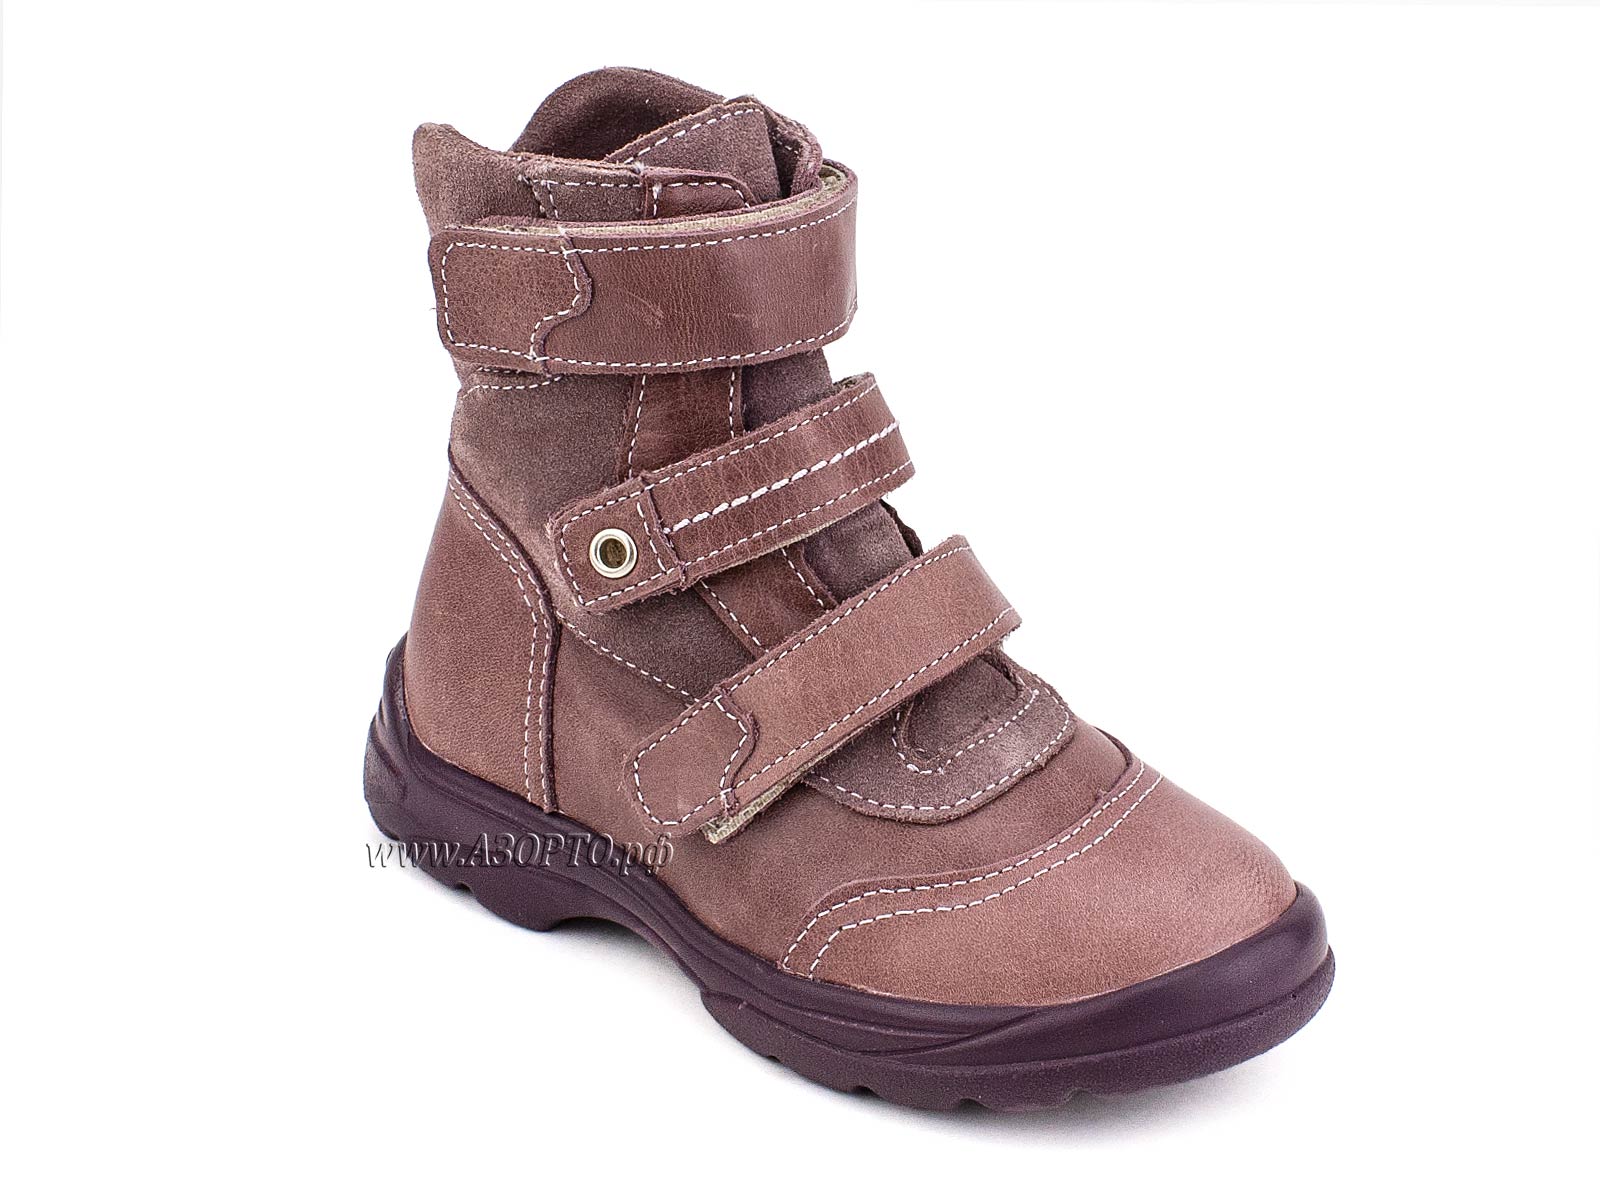 210-217,0159(1) Тотто (Totto), ботинки зимние, ирис, натуральный мех, кожа.